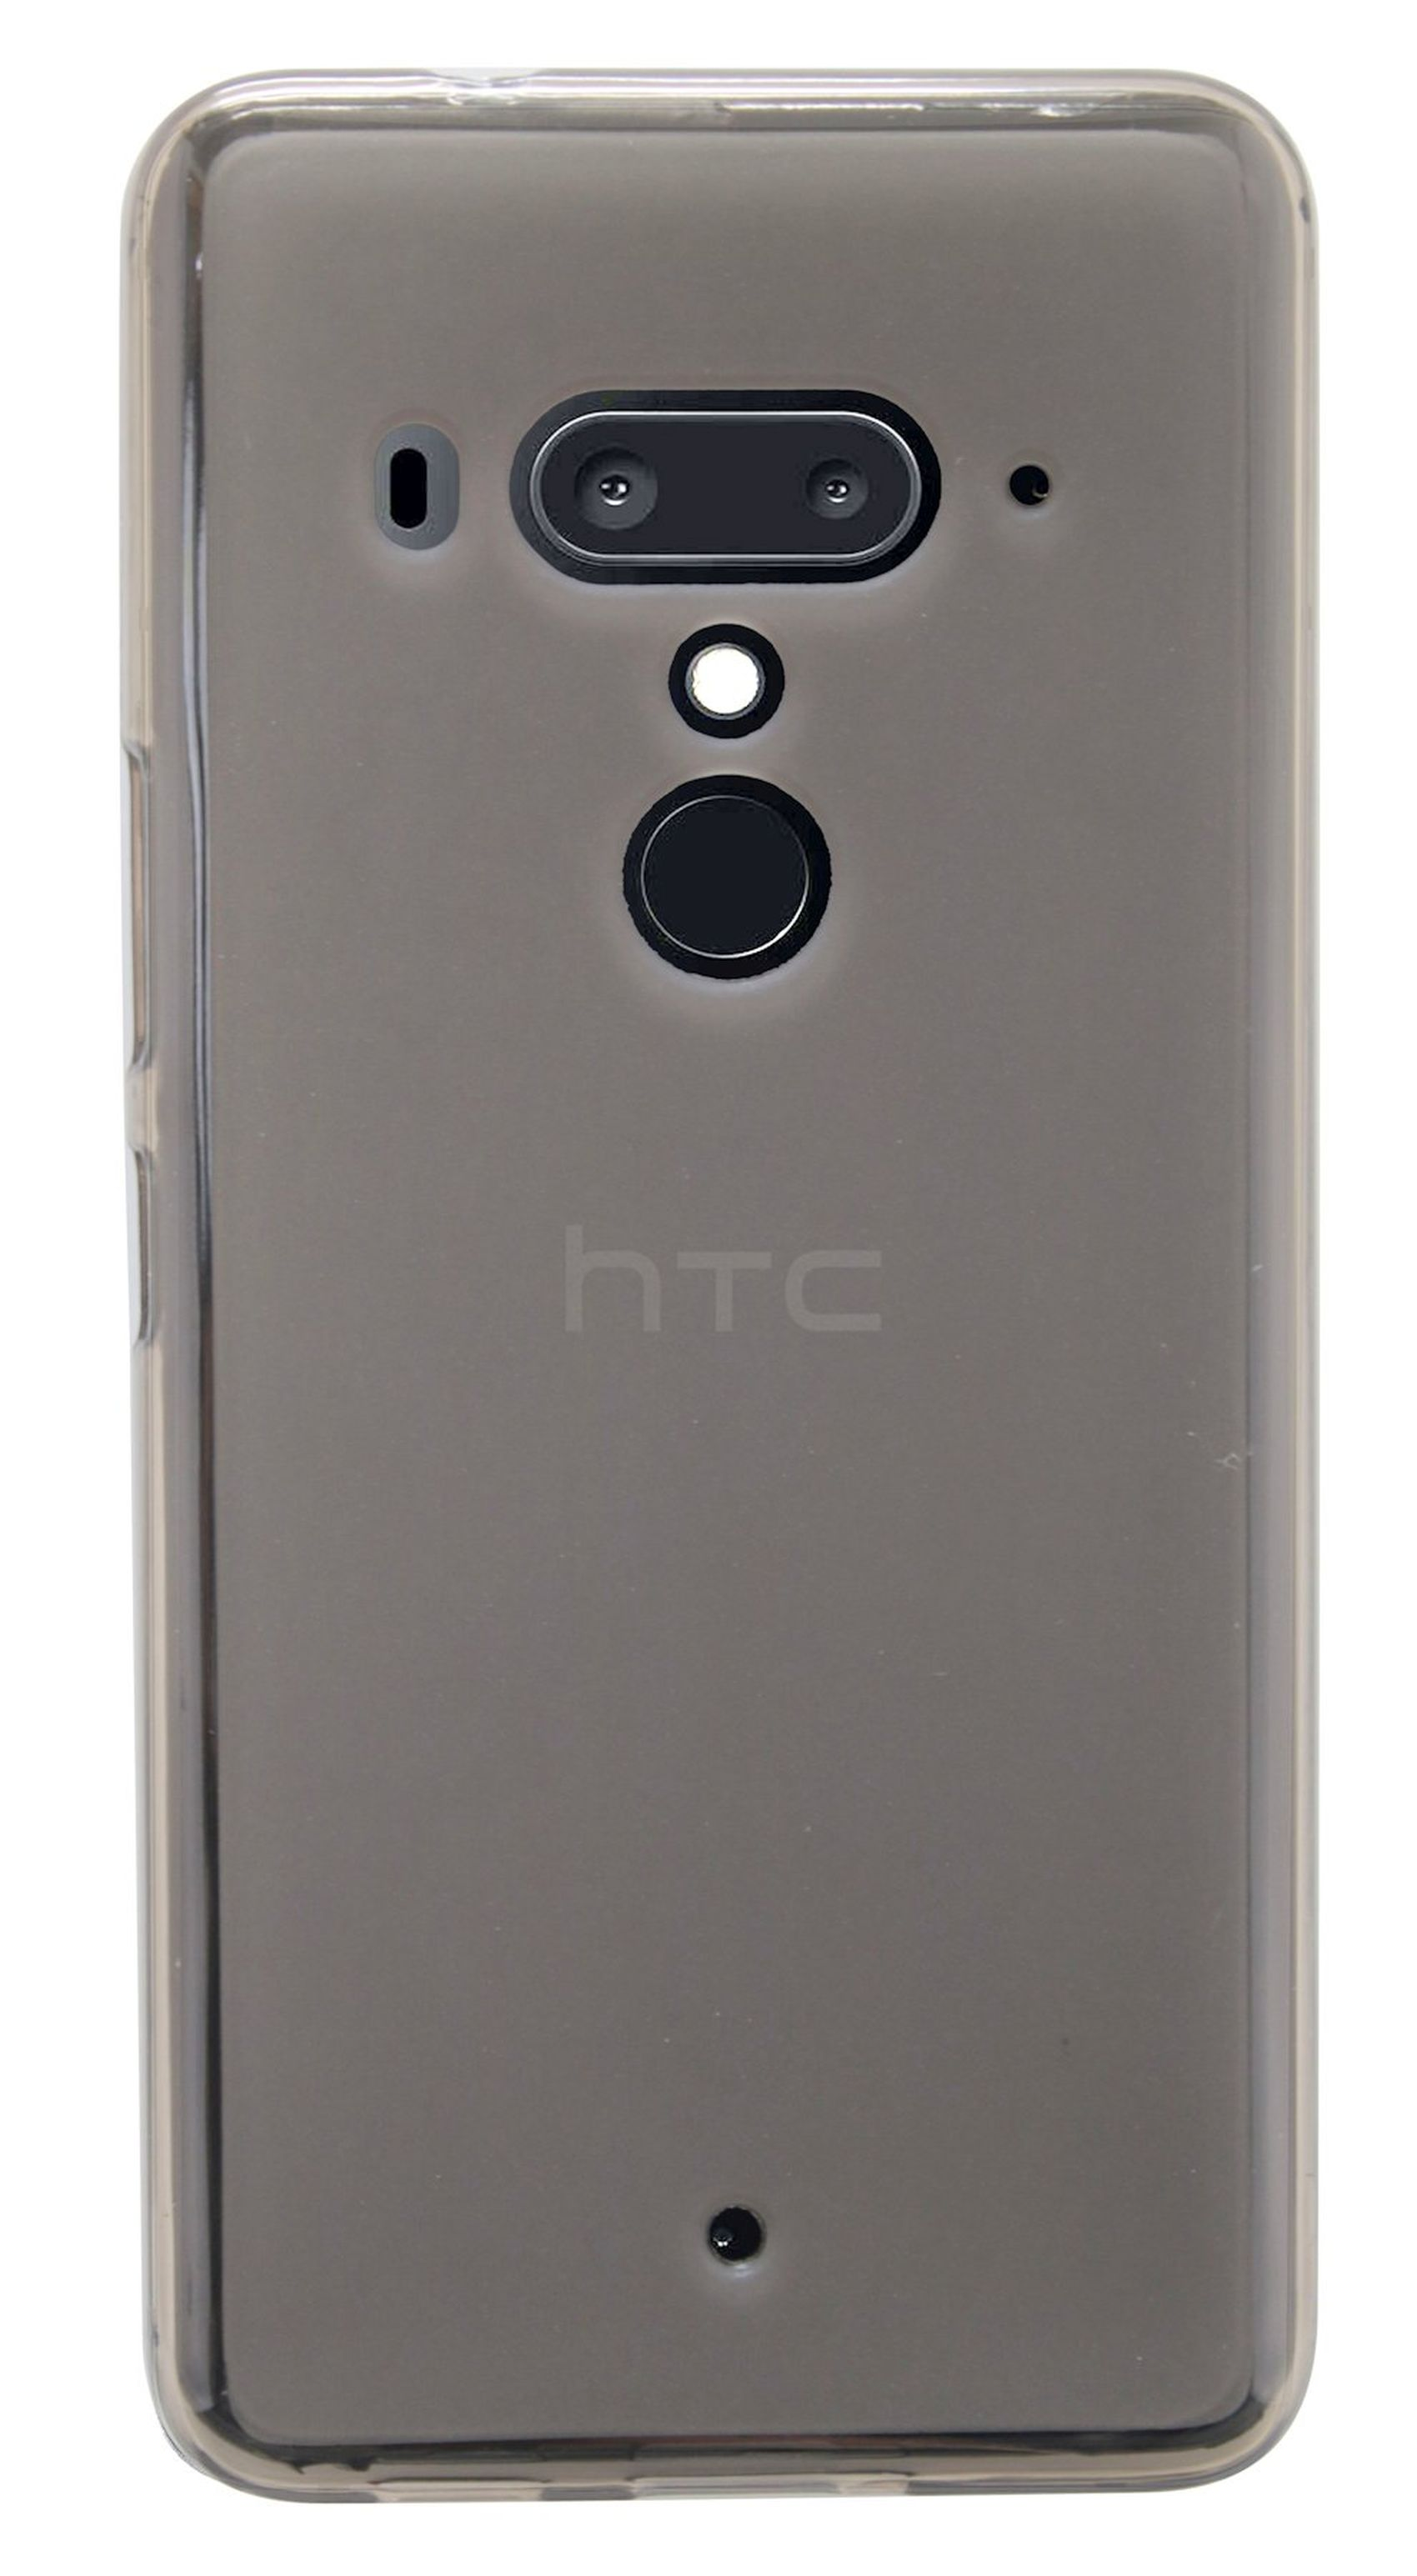 Basic Smoke, Hülle mit U12+, Soft Handy U12+ HTC, Silikon Schutz COFI Grau kompatibel Bumper, (Plus) TPU cofi1453® HTC Cover Case